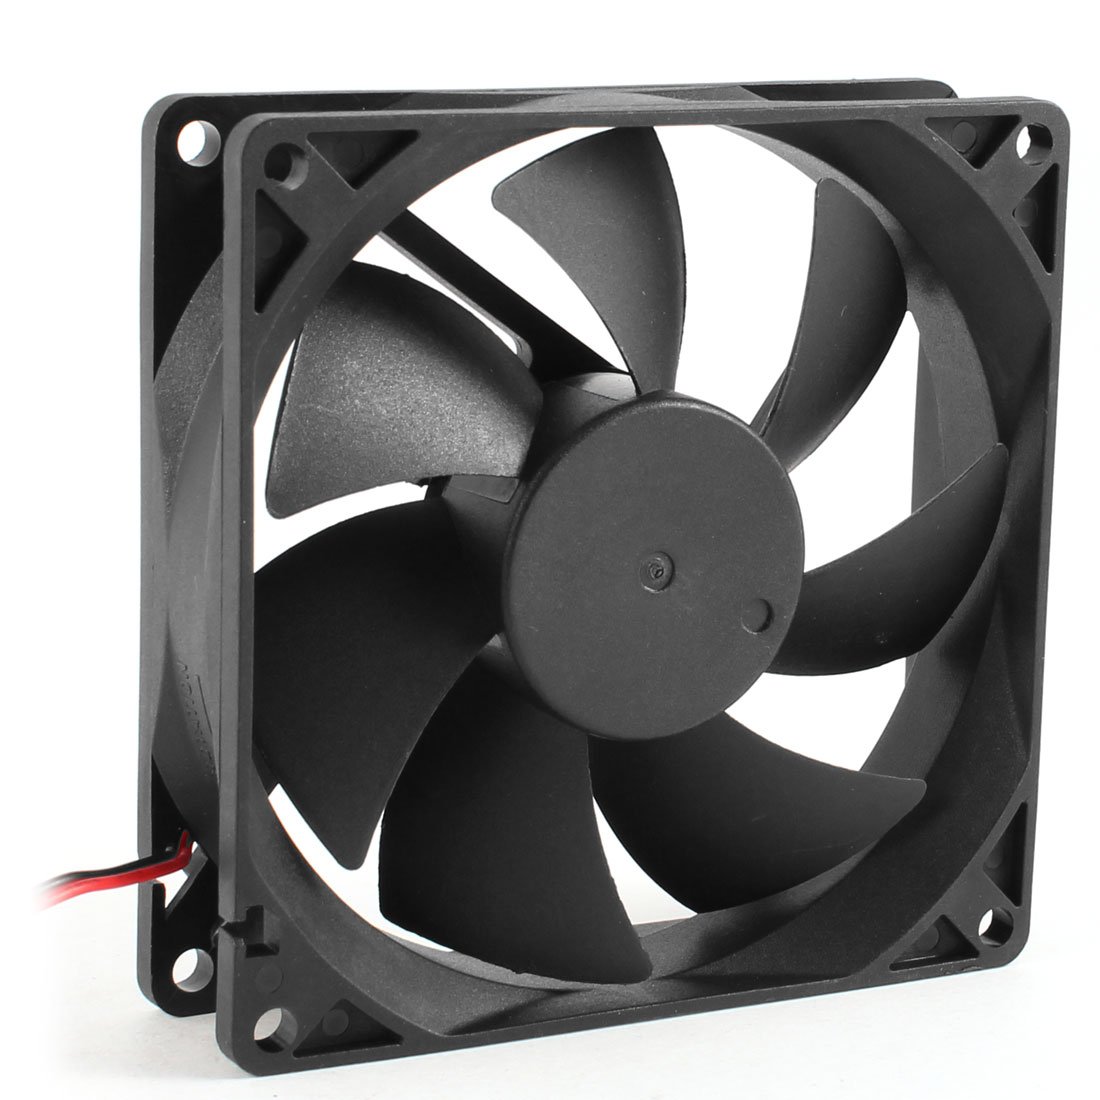 Quiet Cooled Fan Core LED CPU Cooler Cooling Fan Cooler Heatsink for Intel Socket LGA1156/1155/775 AMD AM3 High Quality